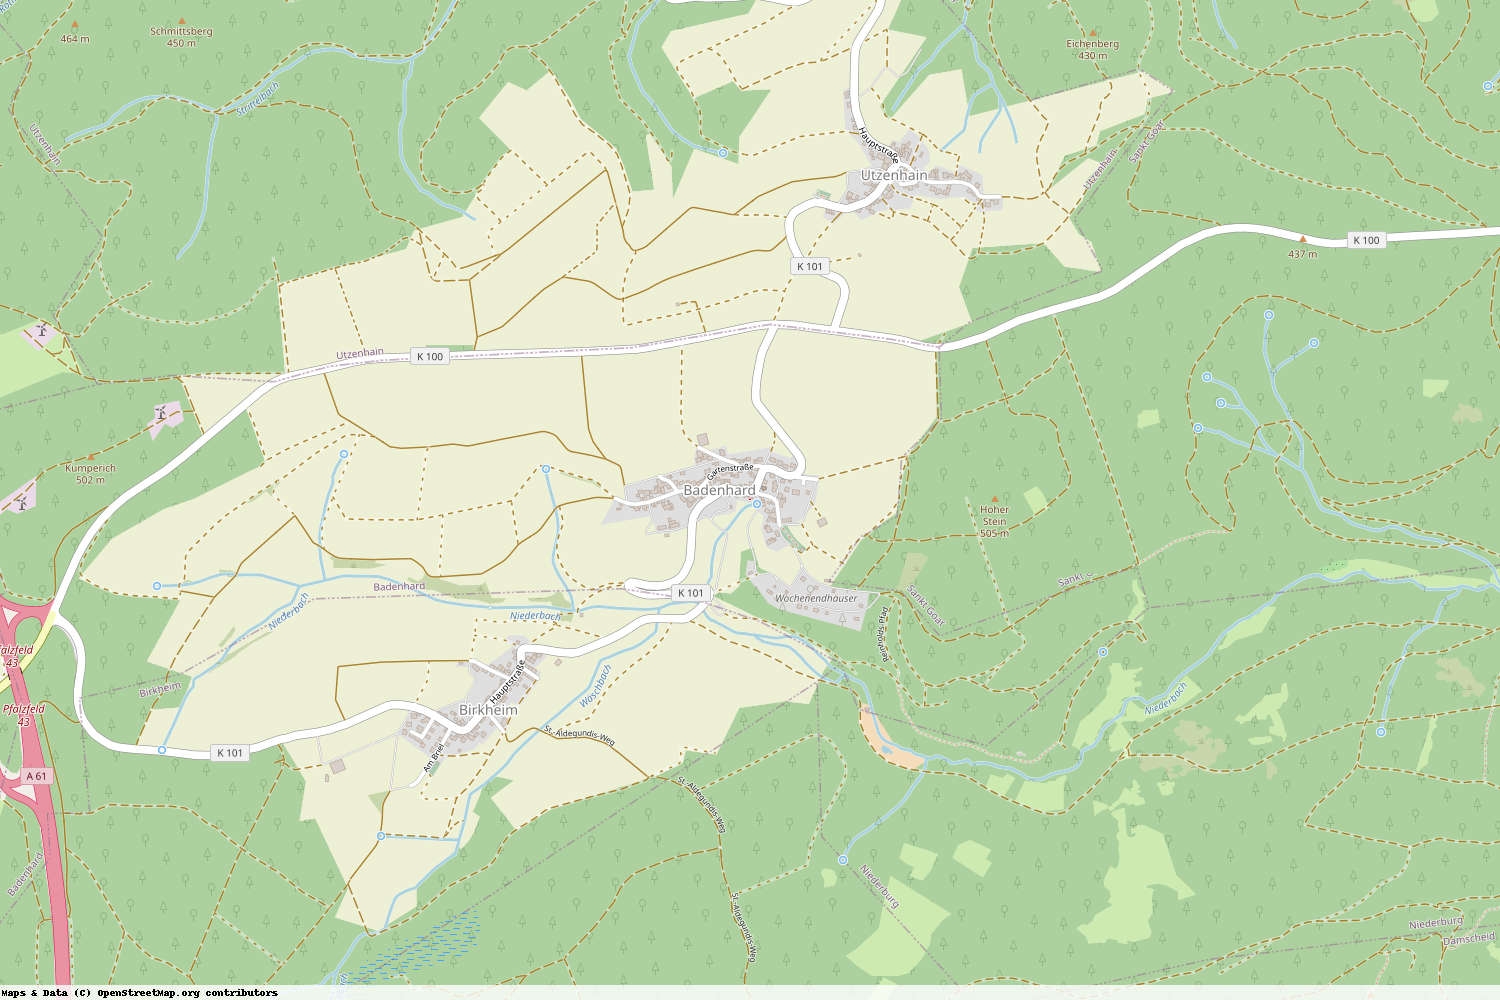 Ist gerade Stromausfall in Rheinland-Pfalz - Rhein-Hunsrück-Kreis - Badenhard?